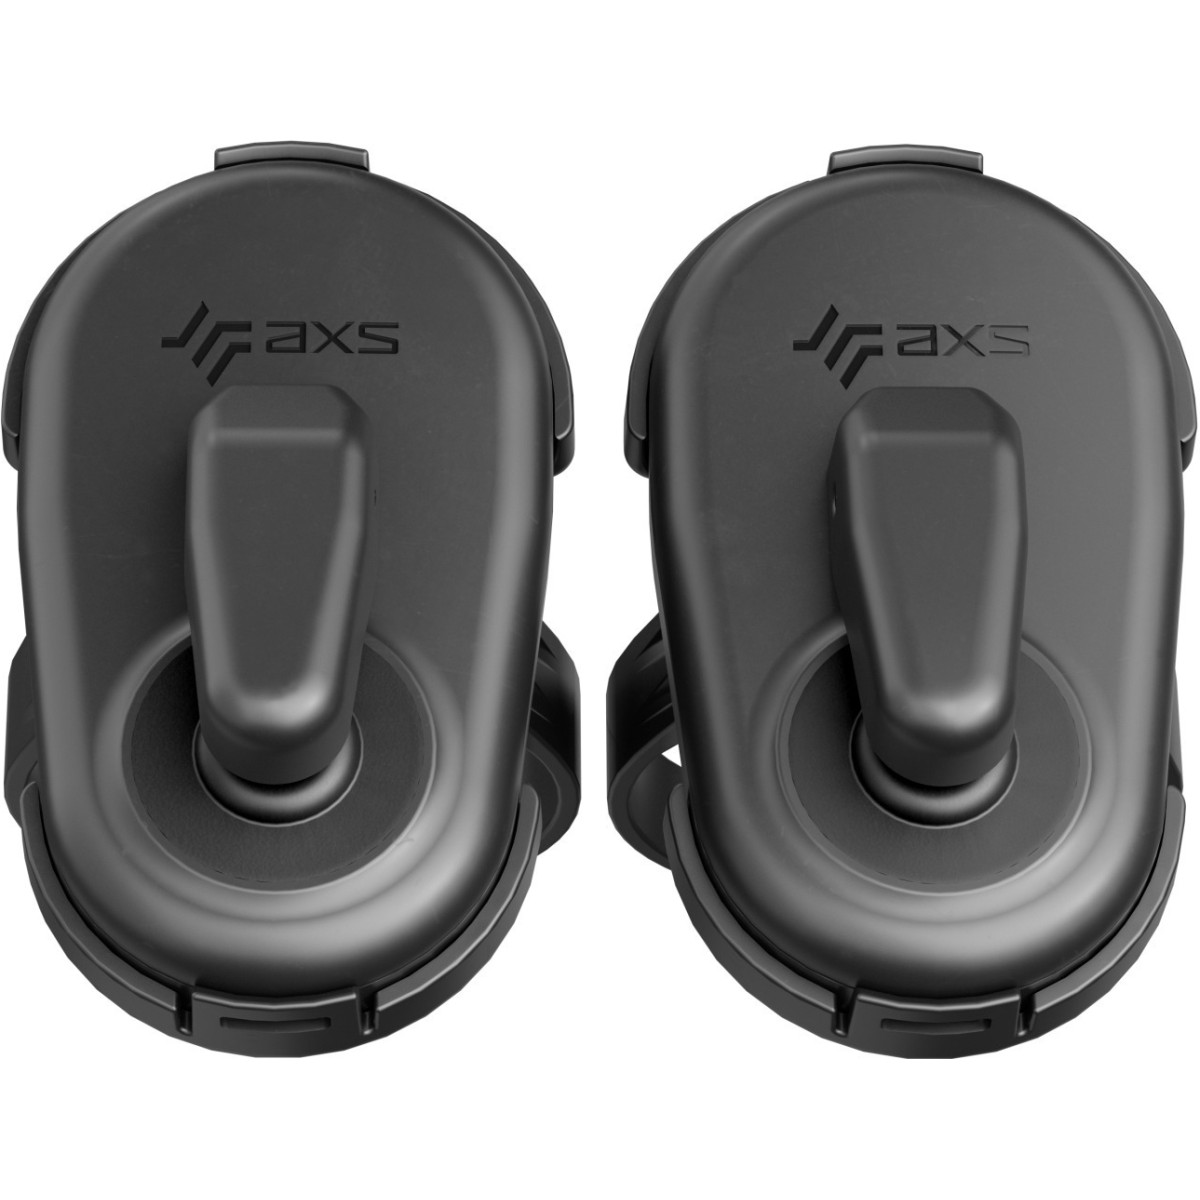 SRAM eTap AXS Wireless Blips